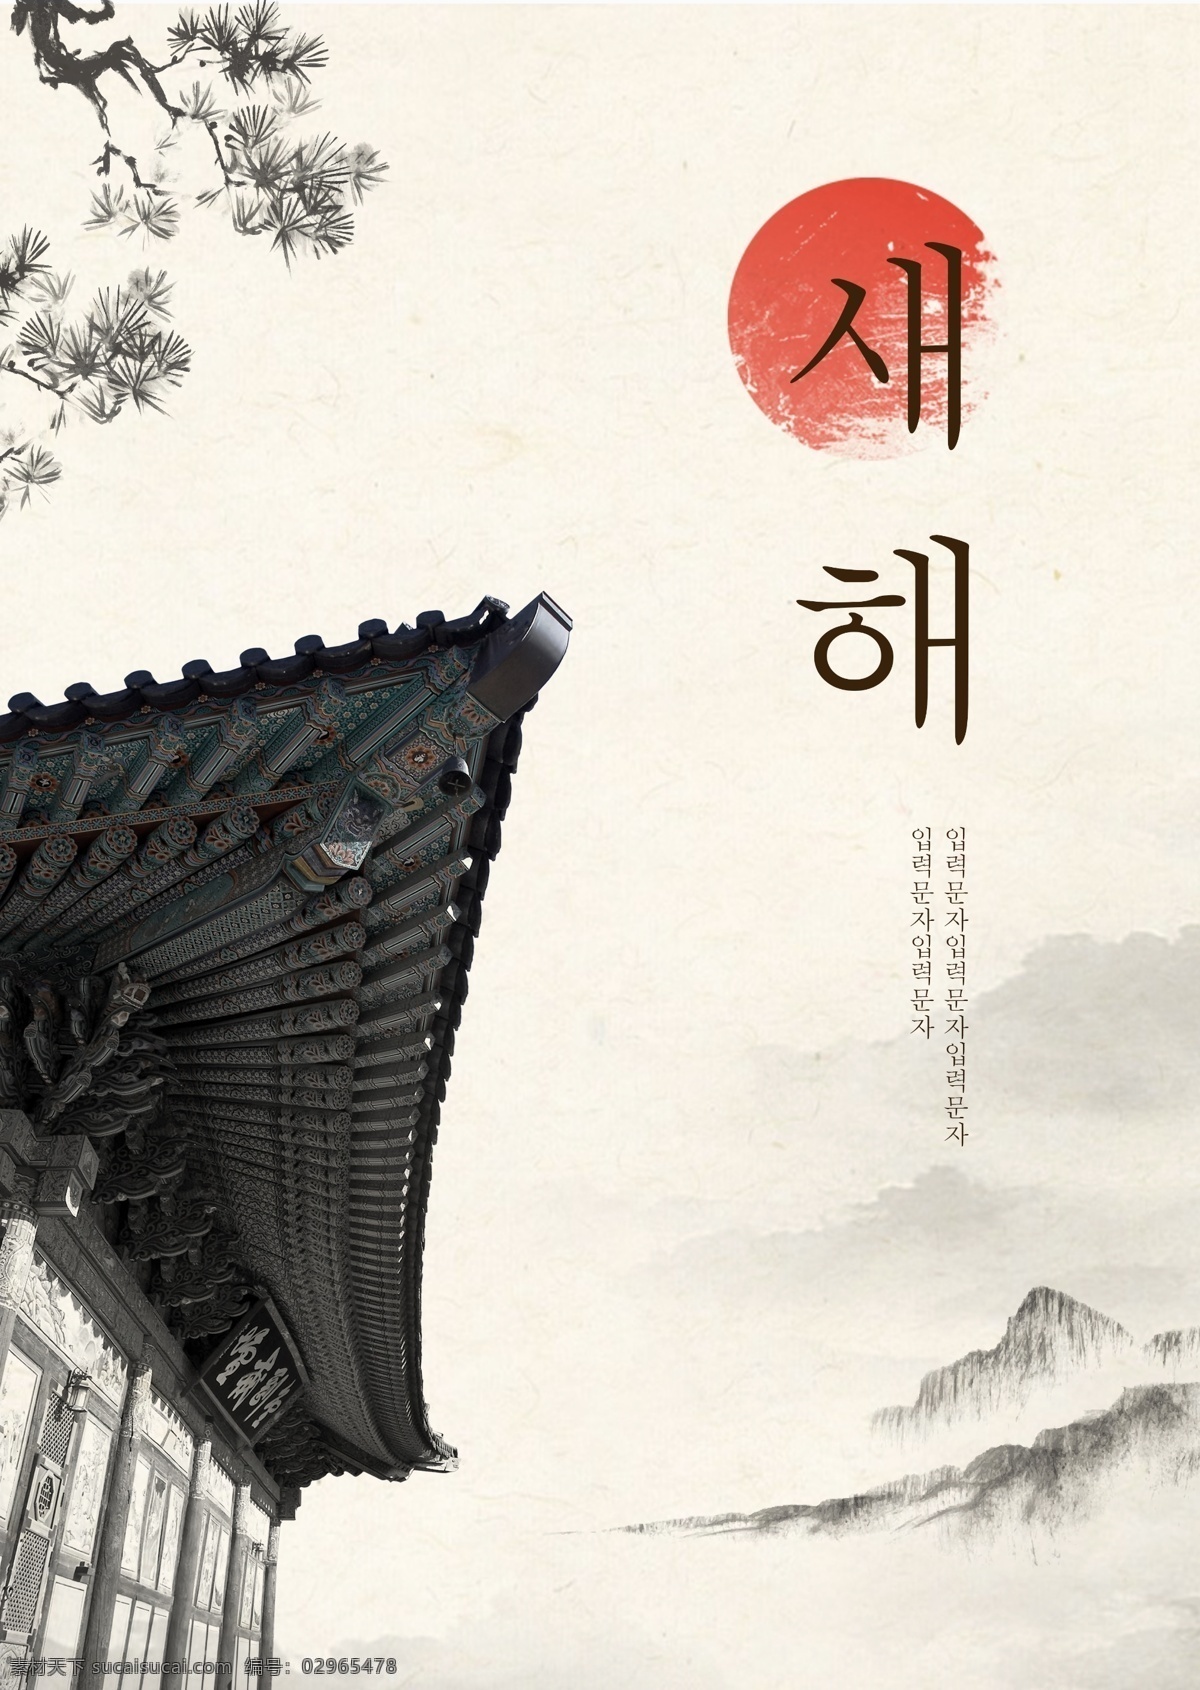 风景 墨水 古典 韩国 新年 海报 景观 墨 朝鲜的 太阳 松树 檐 宫殿 房屋